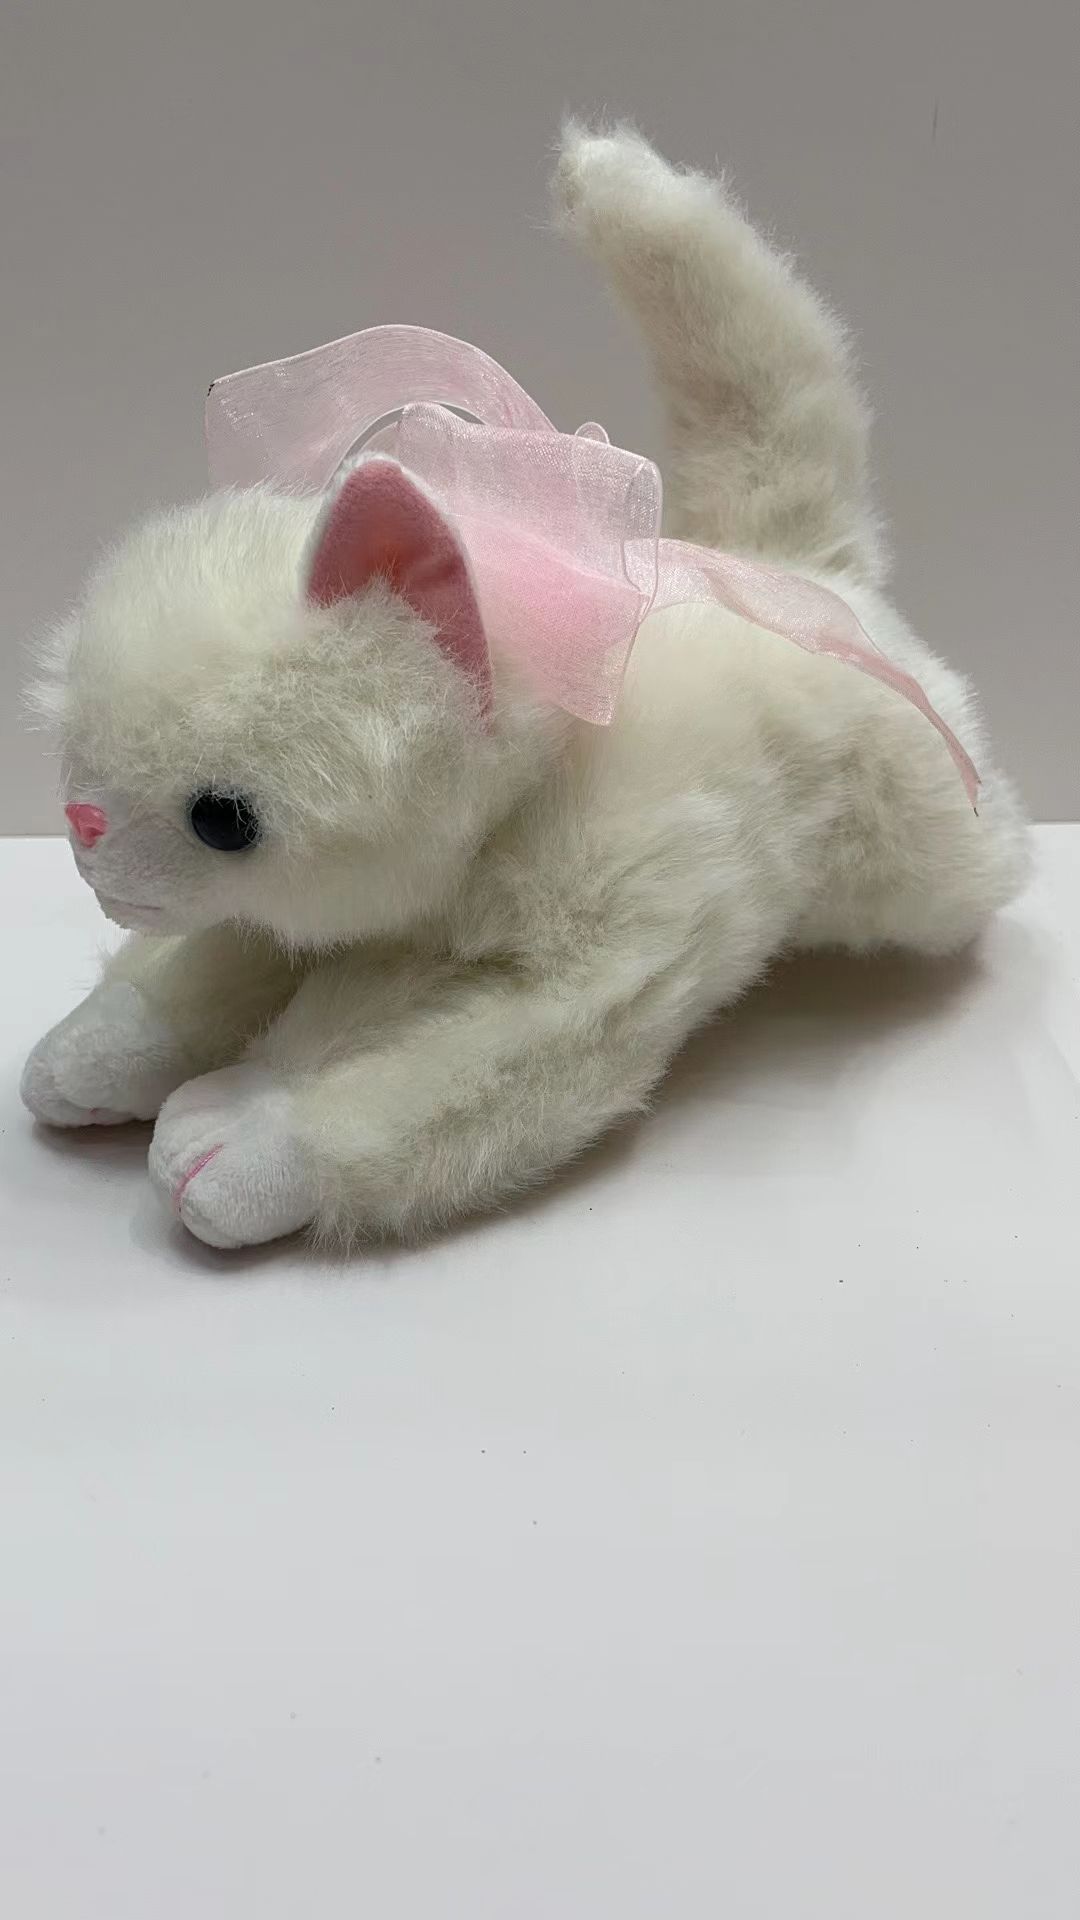 毛绒公仔  婴幼儿玩具  单色单款  白色趴猫浩翔玩具01图